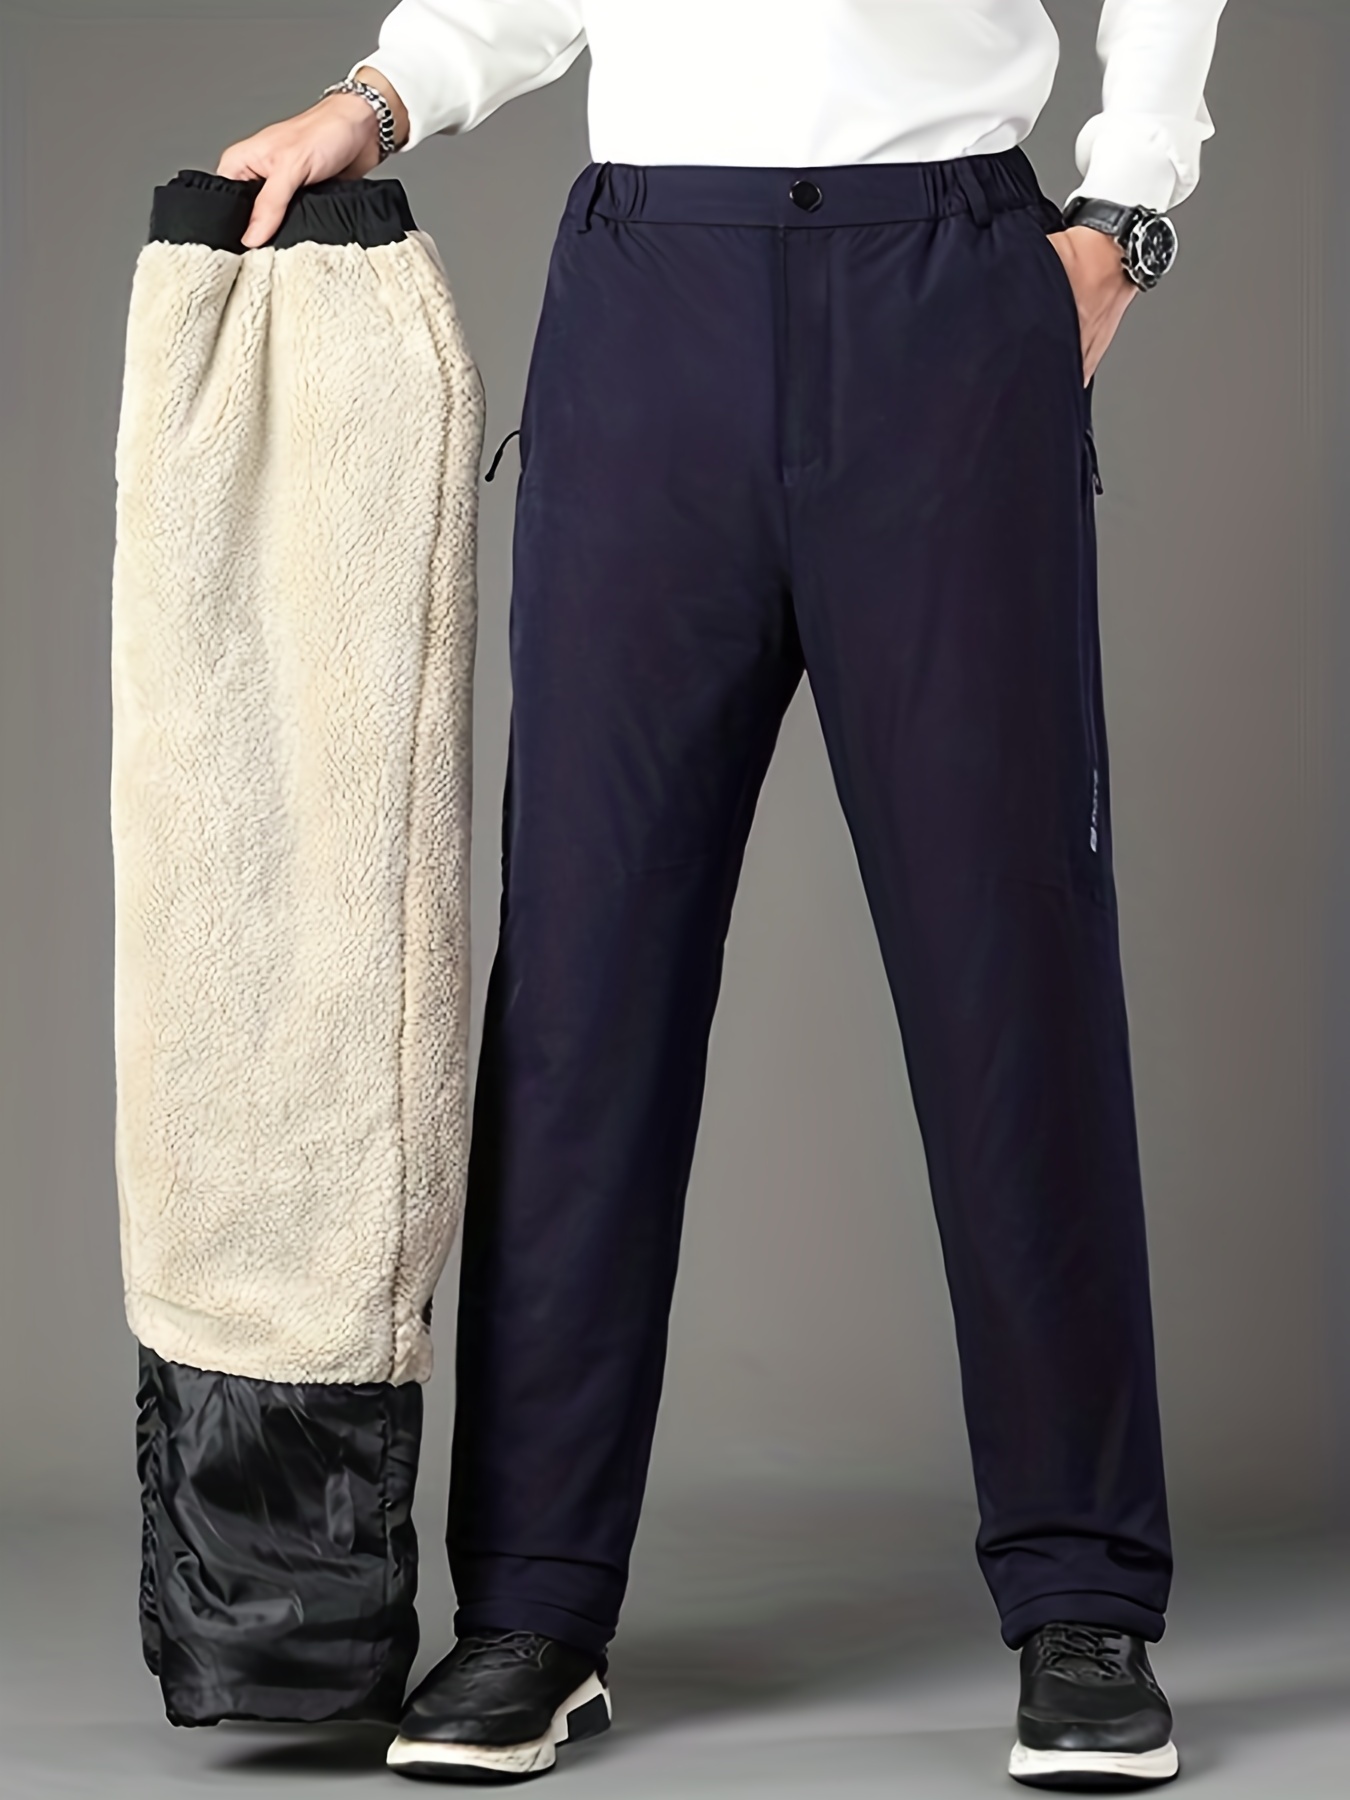 Women Winter Warm Flannel Lined Jeans Winter Warm Thicken Pants